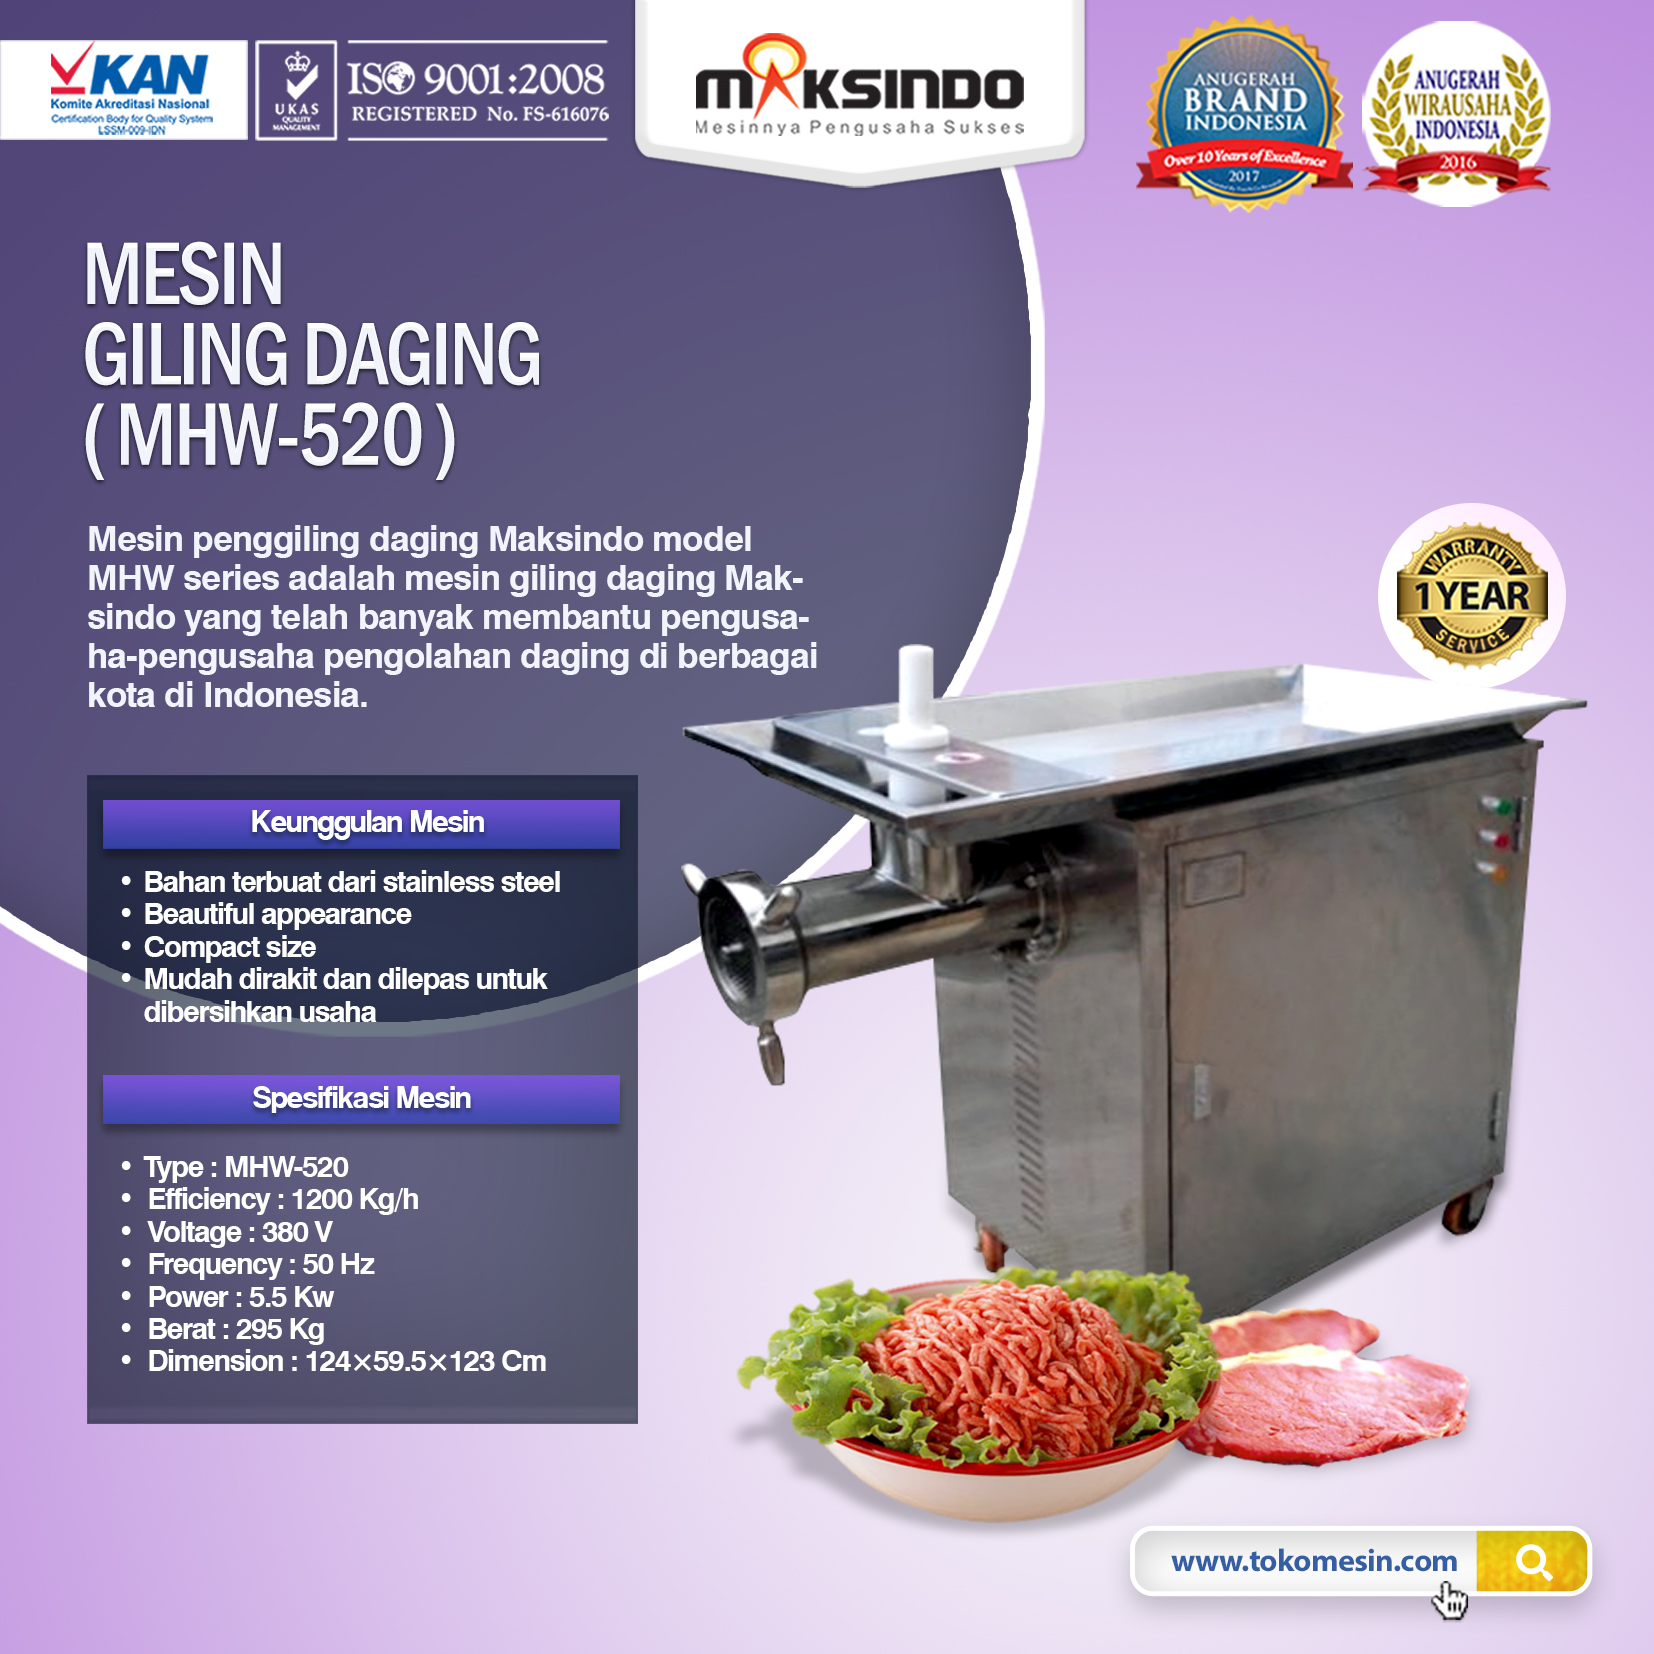 Jual Mesin Giling Daging MHW-520 di Pekanbaru